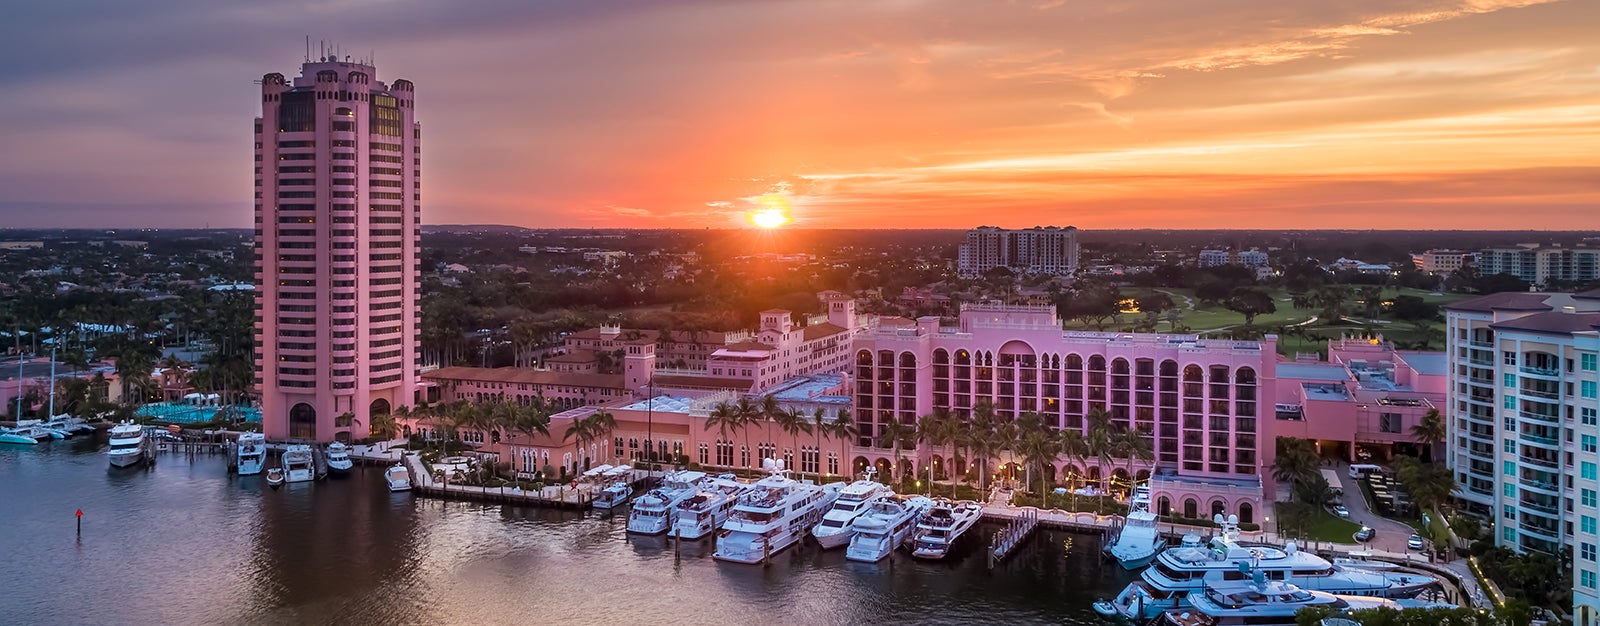 Boca Beach Club, A Waldorf Astoria Resort - Boca Raton, Florida